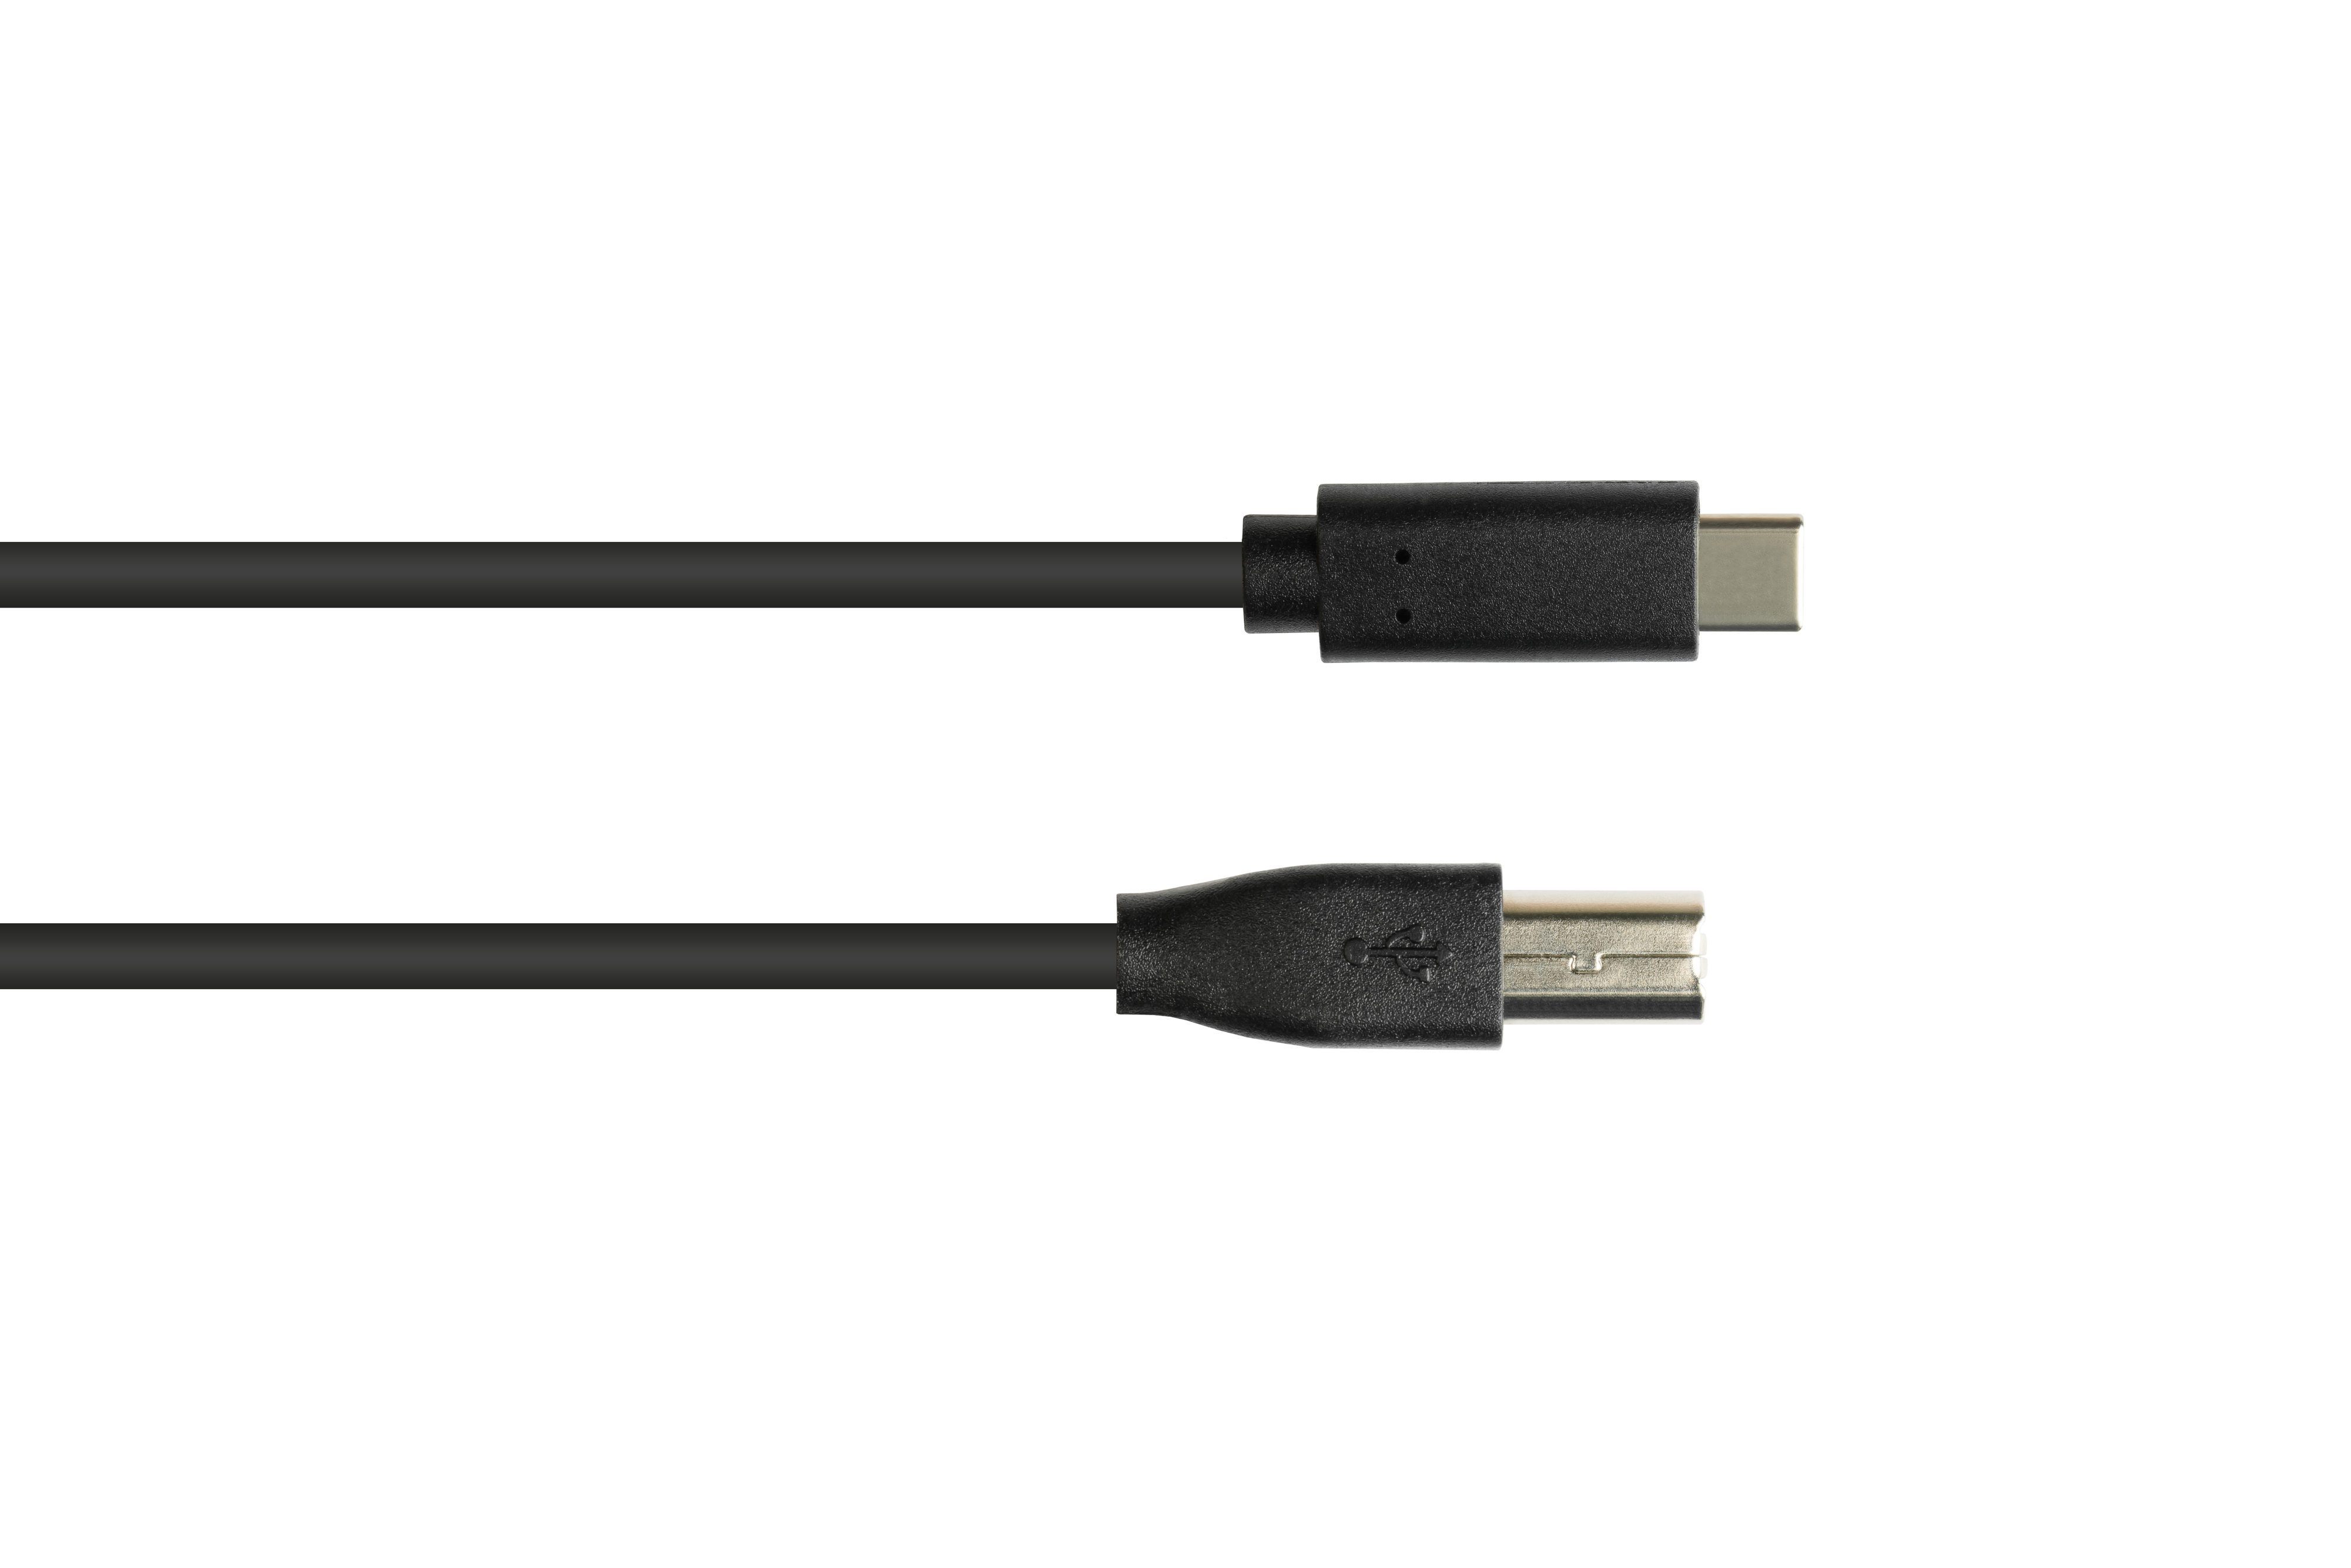 KABELMEISTER USB 2.0, USB-C™ an USB Anschlusskabel schwarz 2.0 Stecker B Stecker, CU